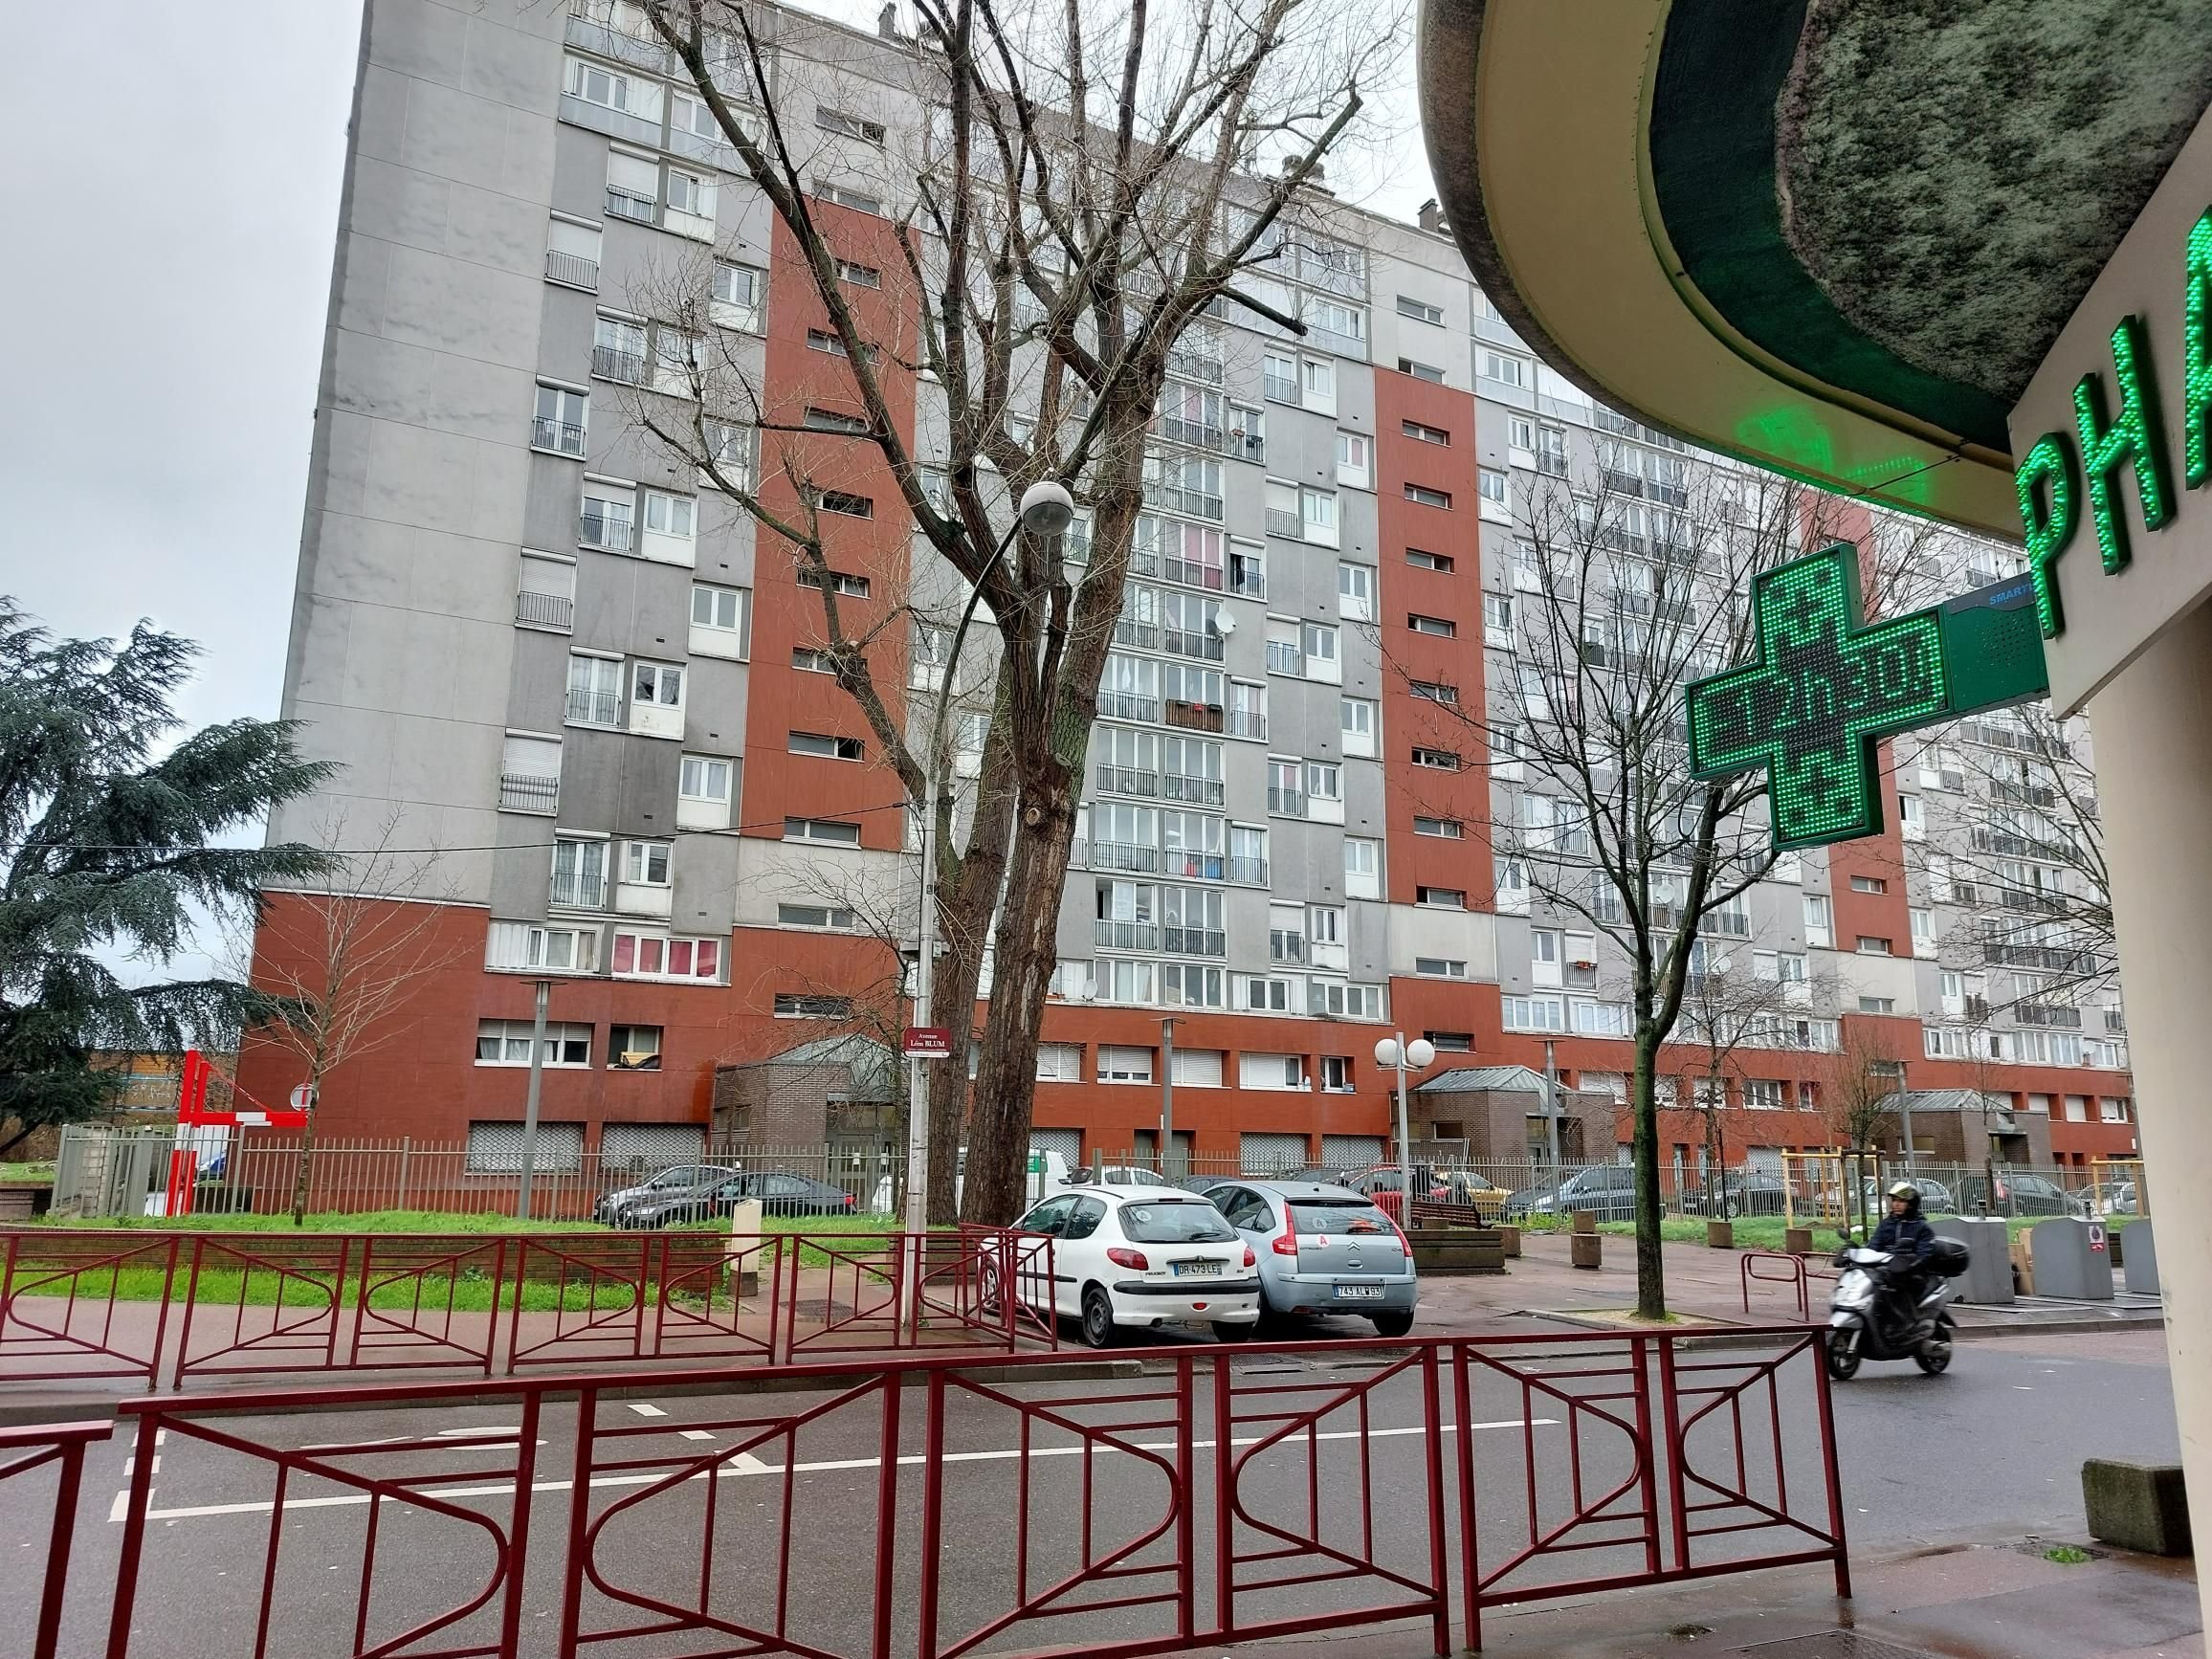 Bondy (Seine-Saint-Denis) la Noue-Caillet, jeudi 22 février. Une balle de 9 mm a été retrouvée au niveau du 3e étage de cet immeuble, fichée dans l'encadrement extérieur de la fenêtre d'une chambre d'enfant. LP/N.R.